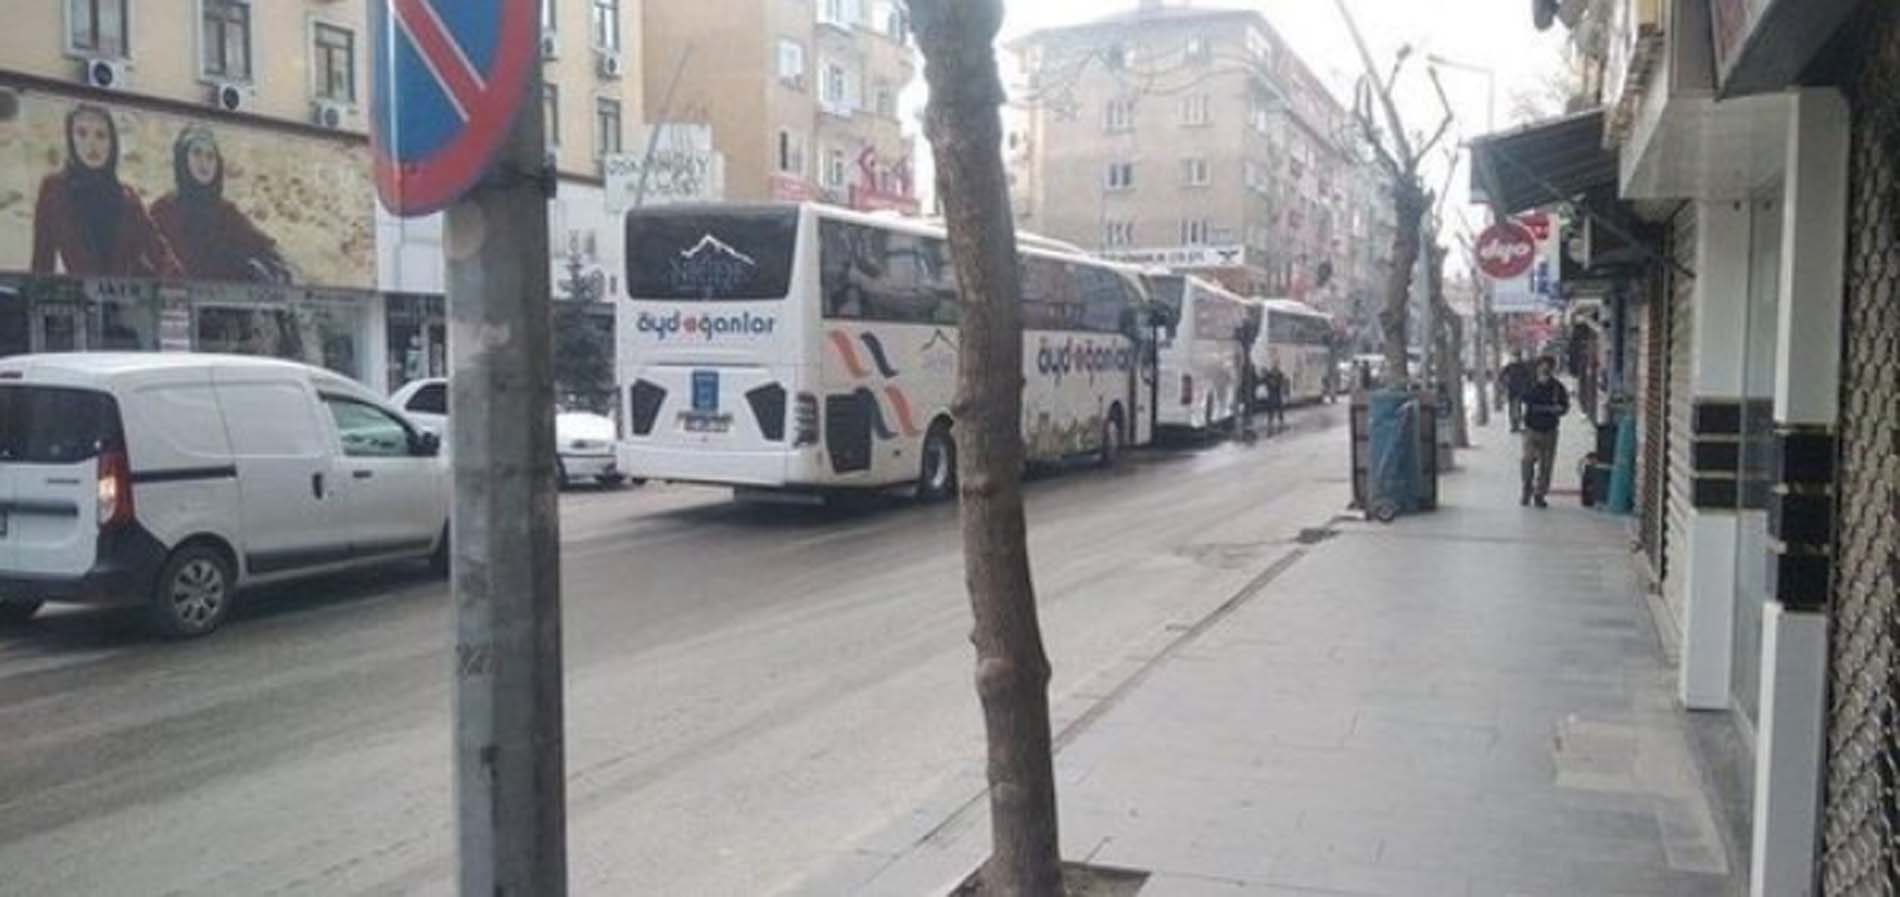 Selahattin Demirtaş'ın çağrısına uydu, 29 ilden otobüs kaldırdı! Kemal Kılıçdaroğlu'nun büyük miting hayali suya düştü! Mersin Valiliği mitingine katılan kişi sayısını açıkladı!